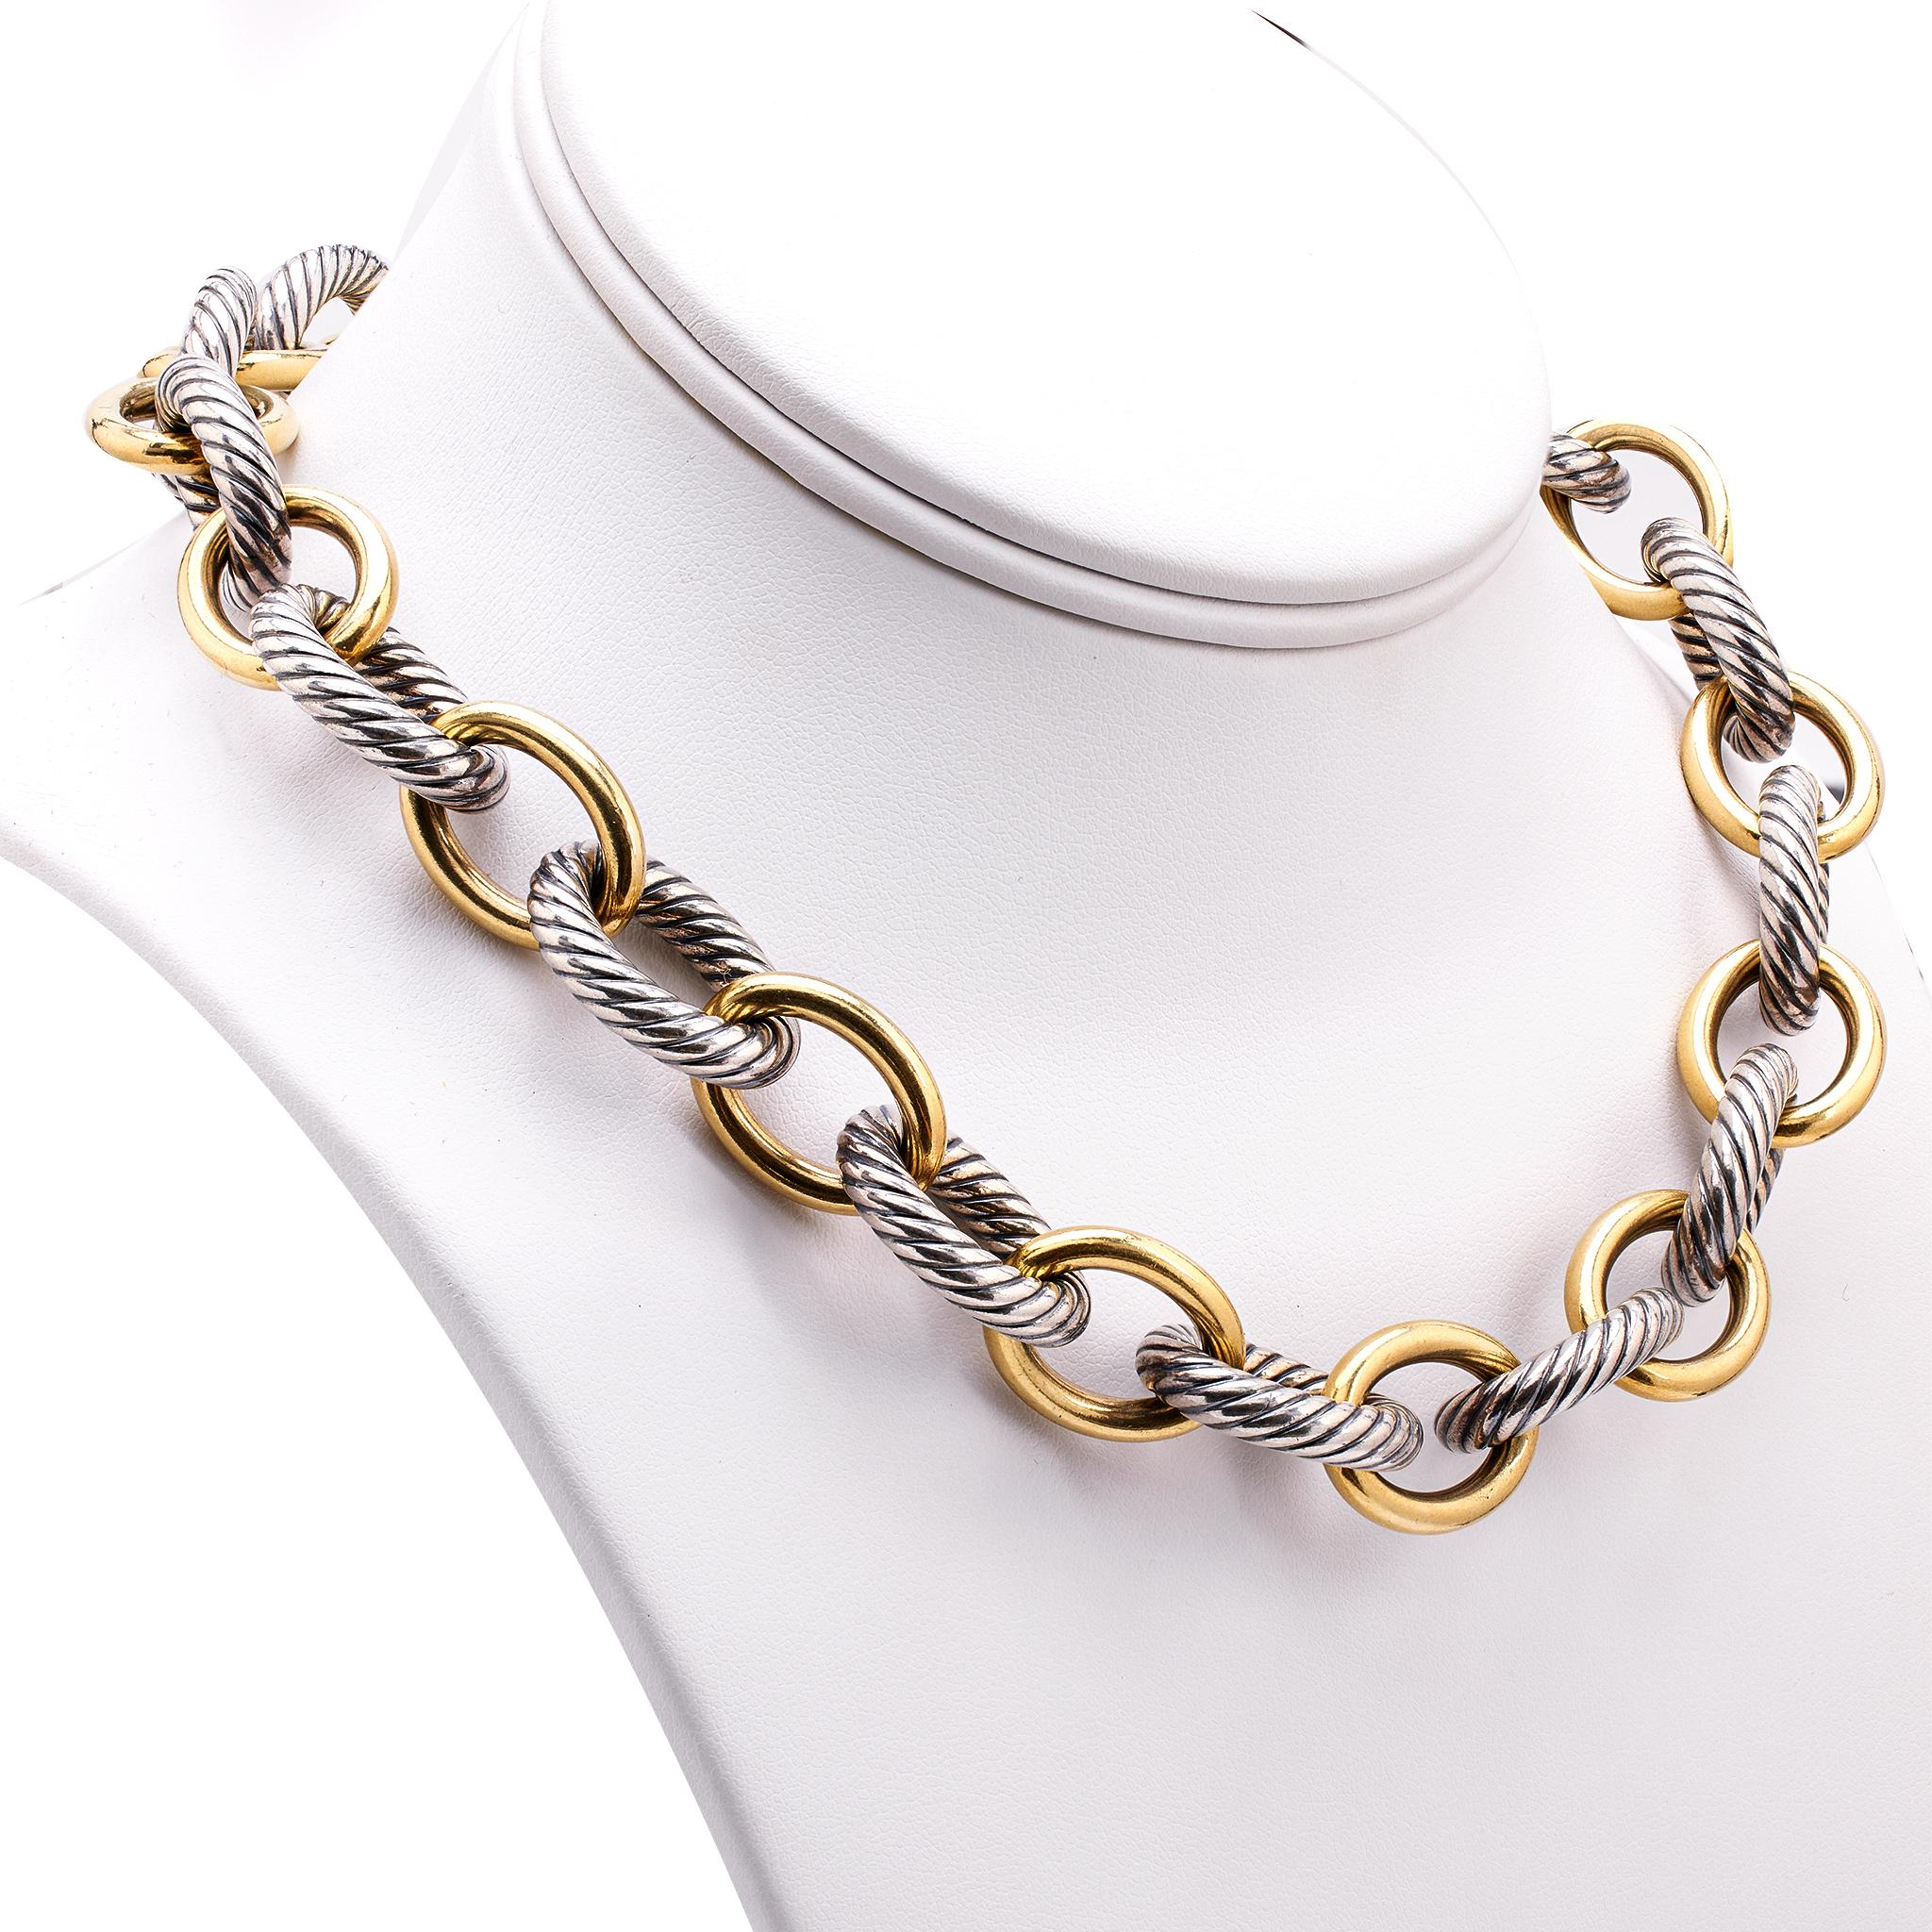 david yurman chain necklace